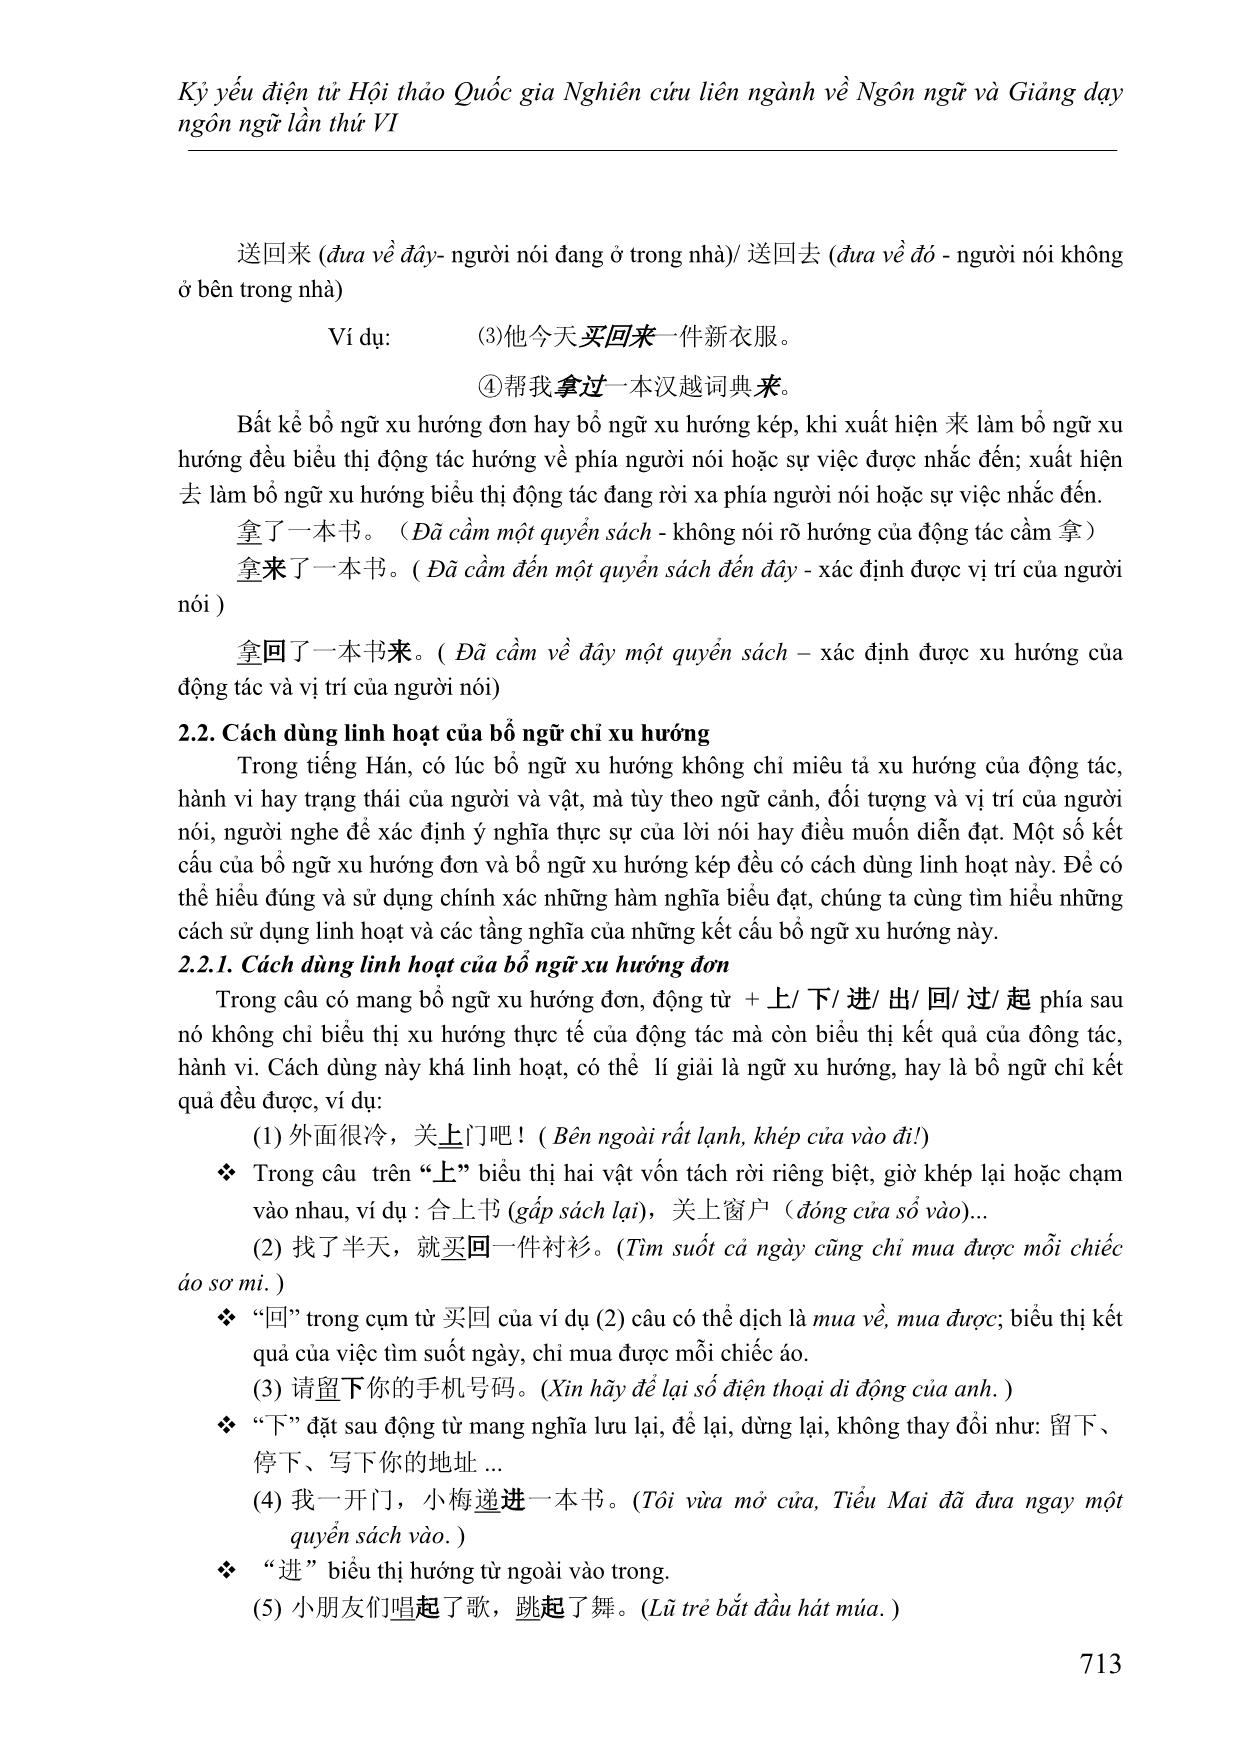 Cách dùng linh hoạt của bổ ngữ xu hướng và cách xác định ý nghĩa của câu khi sử dụng bổ ngữ xu hướng kép 上来, 上去, 下来,下 trang 3